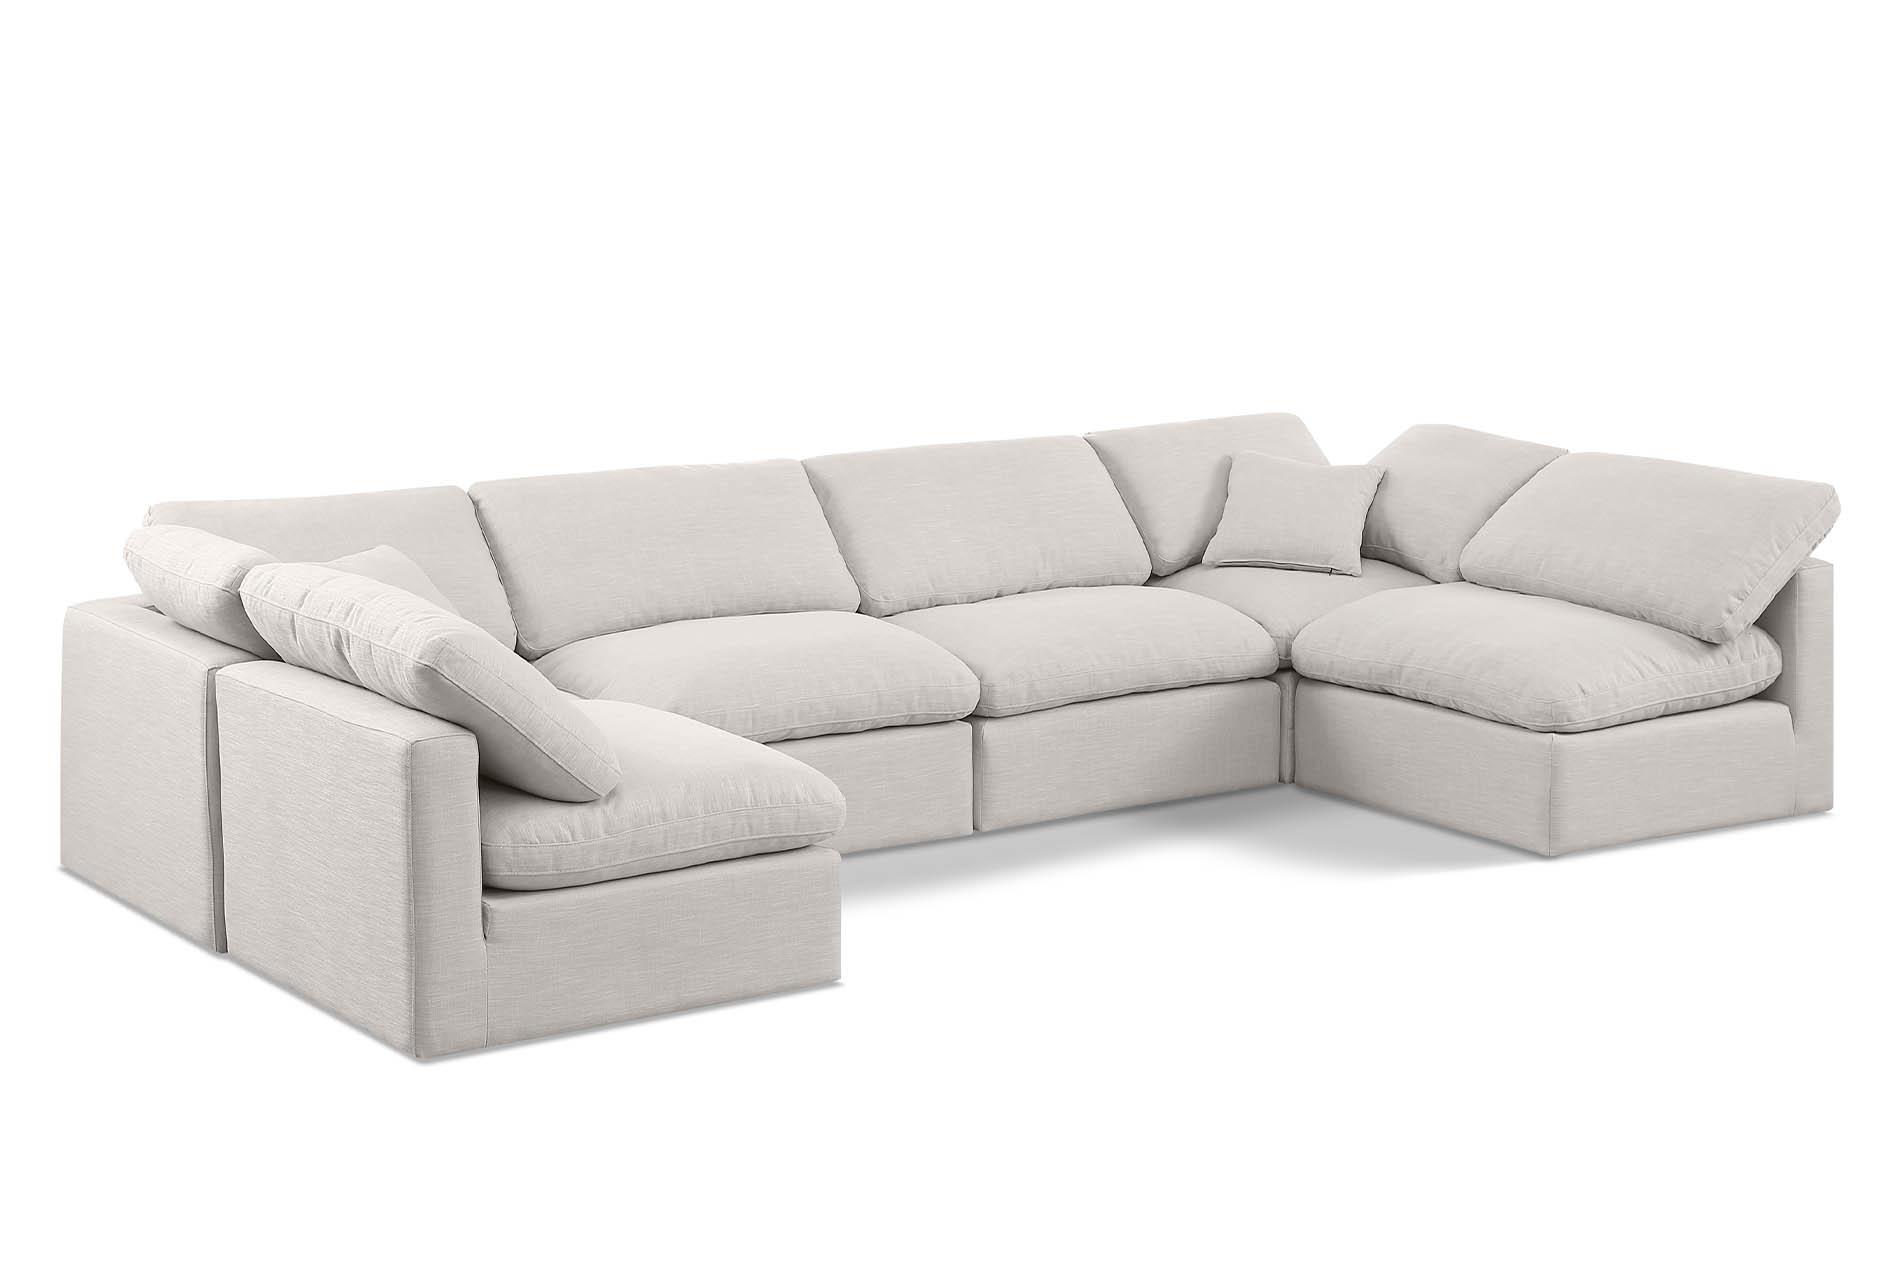 

    
Meridian Furniture INDULGE 141Cream-Sec6D Modular Sectional Cream 141Cream-Sec6D
